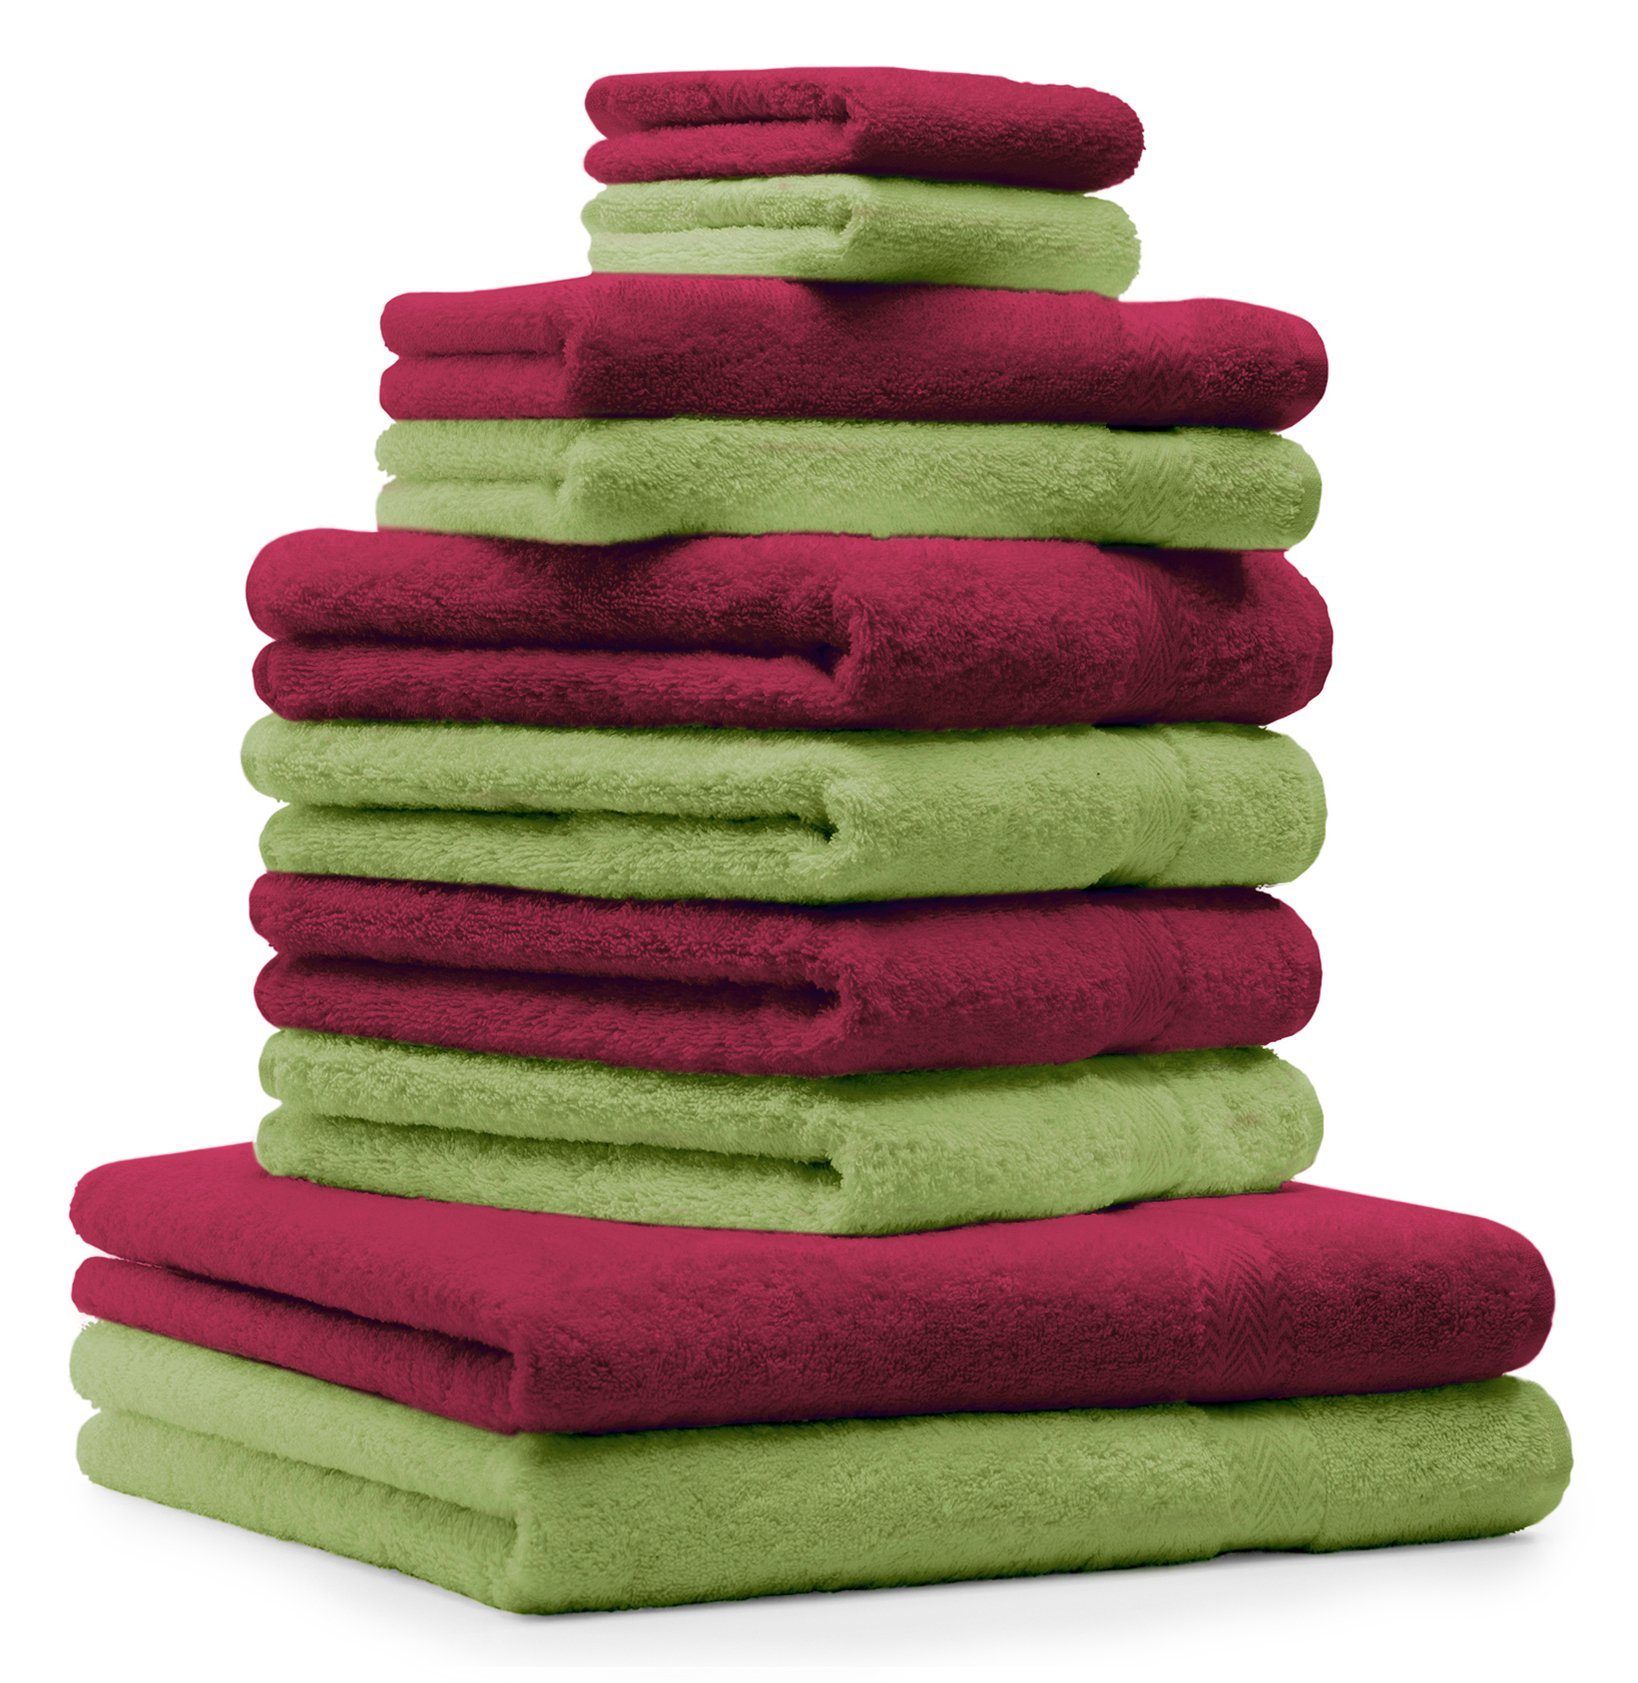 Betz Handtuch Set 10-TLG. 100% 100% Handtuch-Set Classic dunkelrot und Baumwolle apfelgrün, Baumwolle